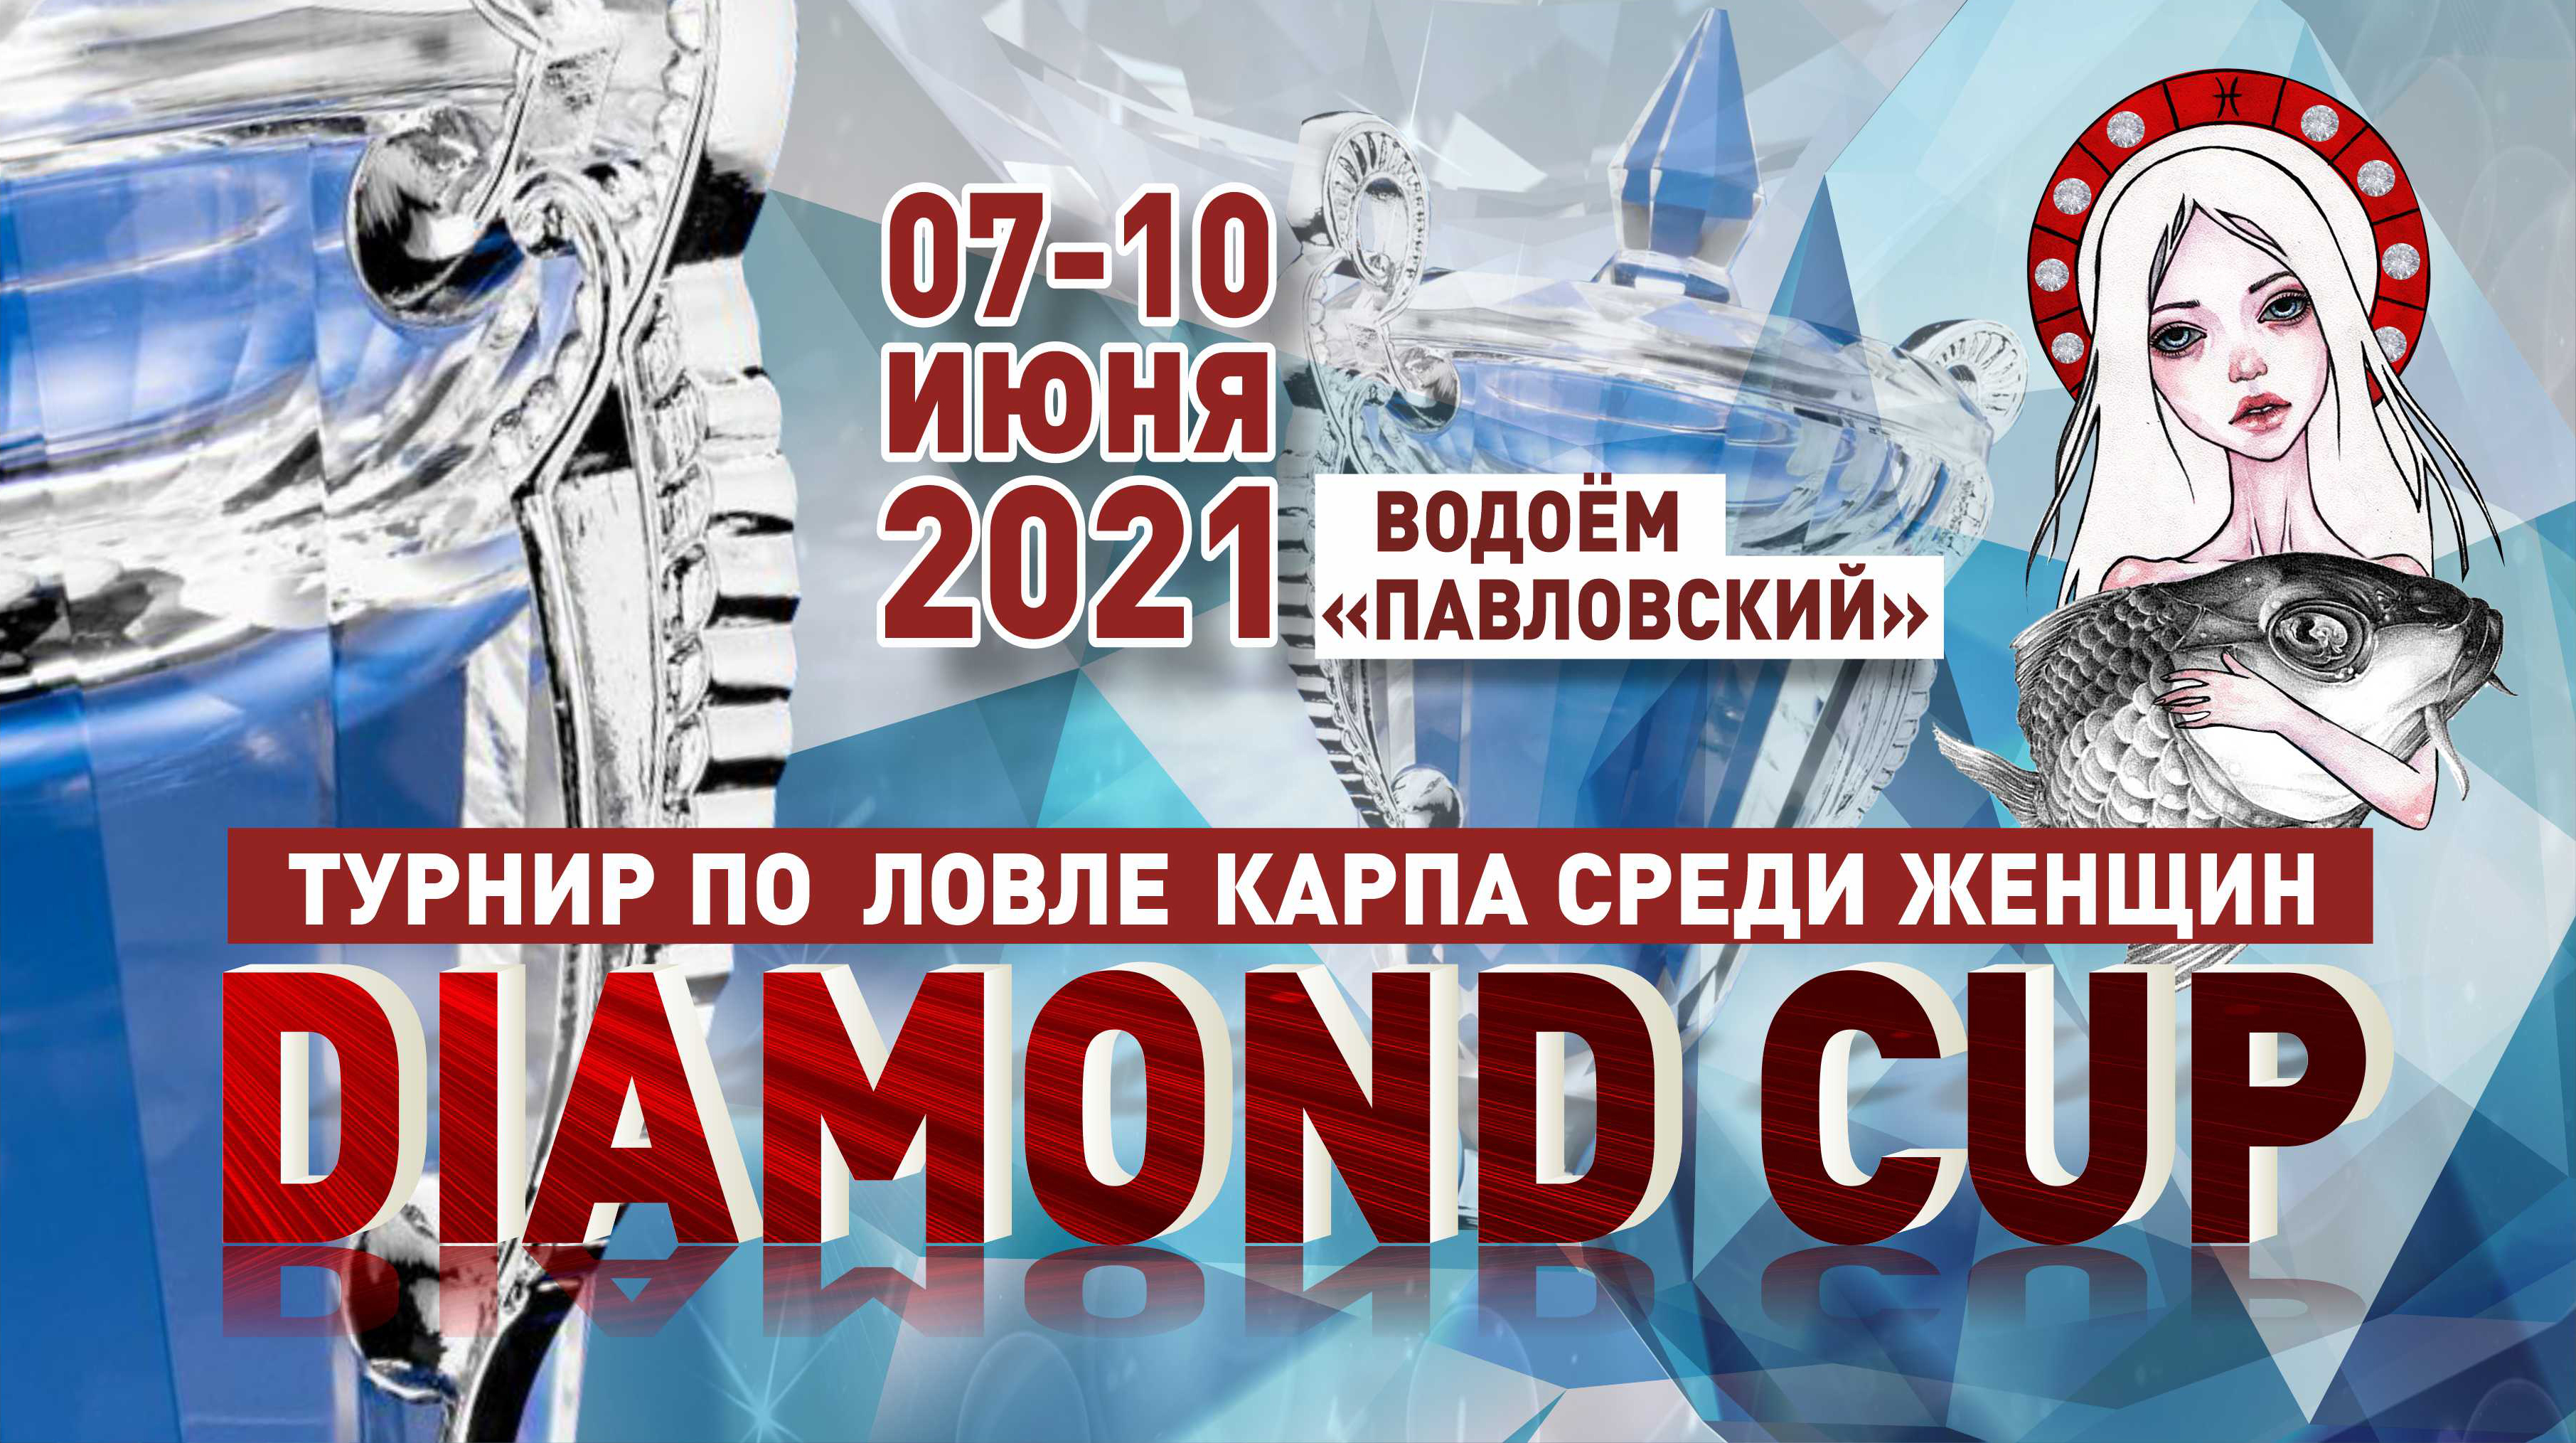 Положение о женском турнире «DIAMOND CUP» 2021 года по ловле карпа